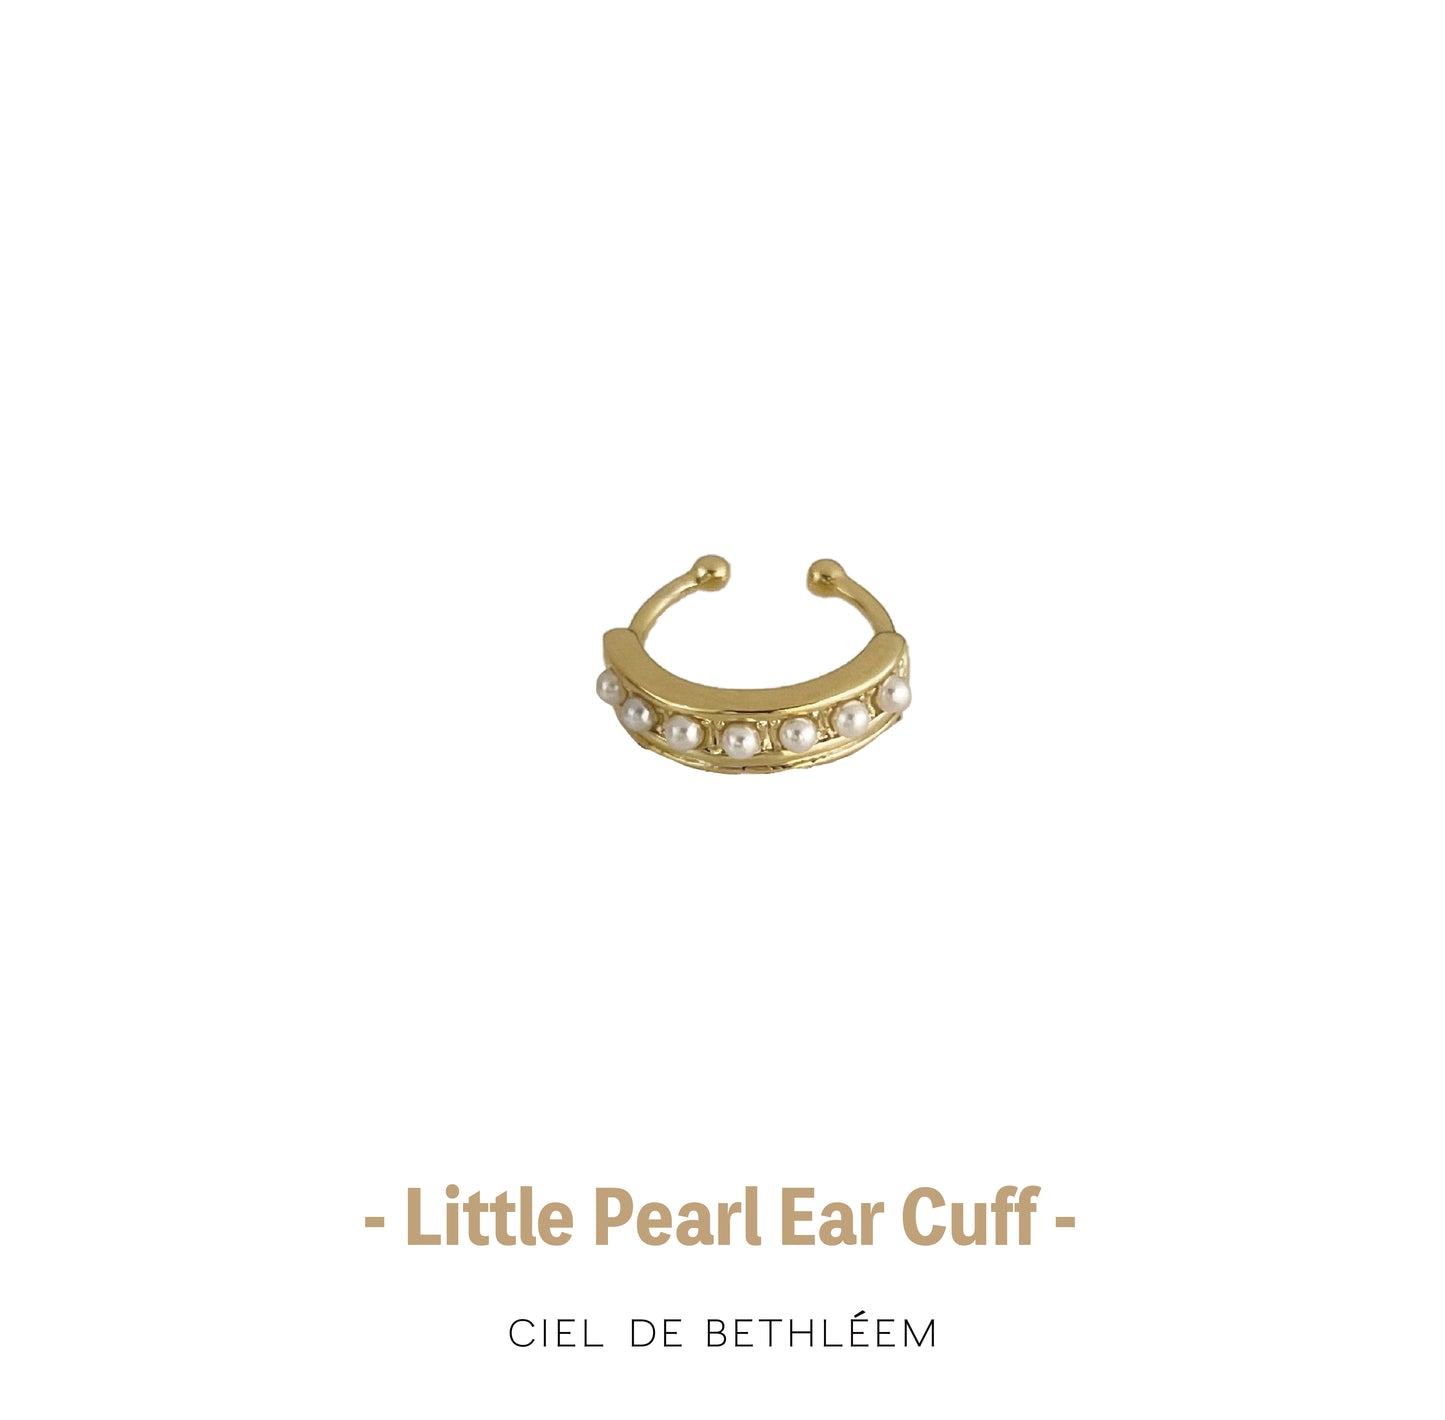 Little Pearl Ear Cuff